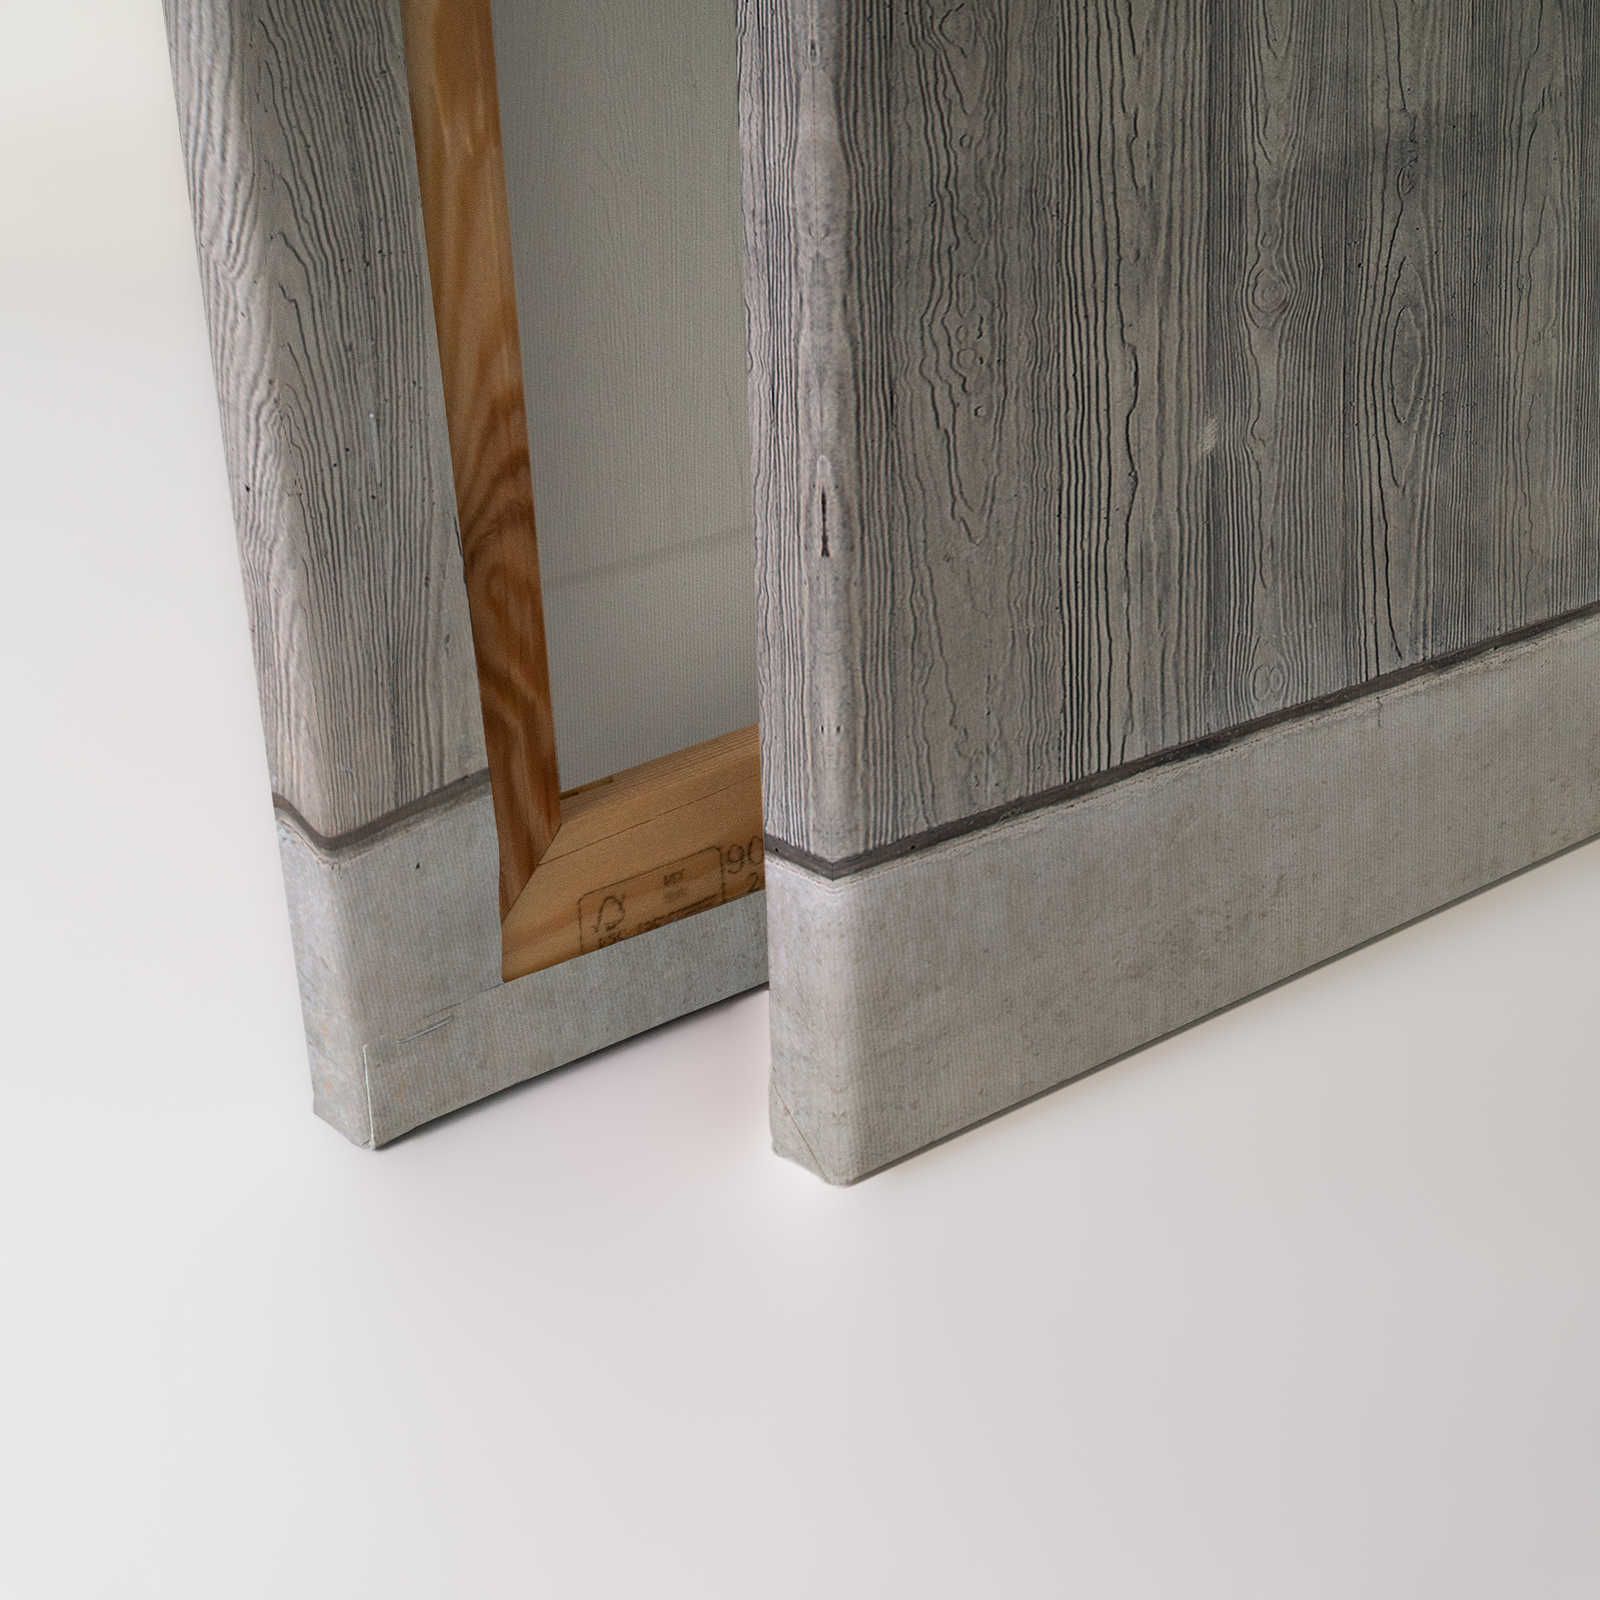             Cuadro de lienzo de losa de hormigón con encofrado de tablas y veta de madera - 0,90 m x 0,60 m
        